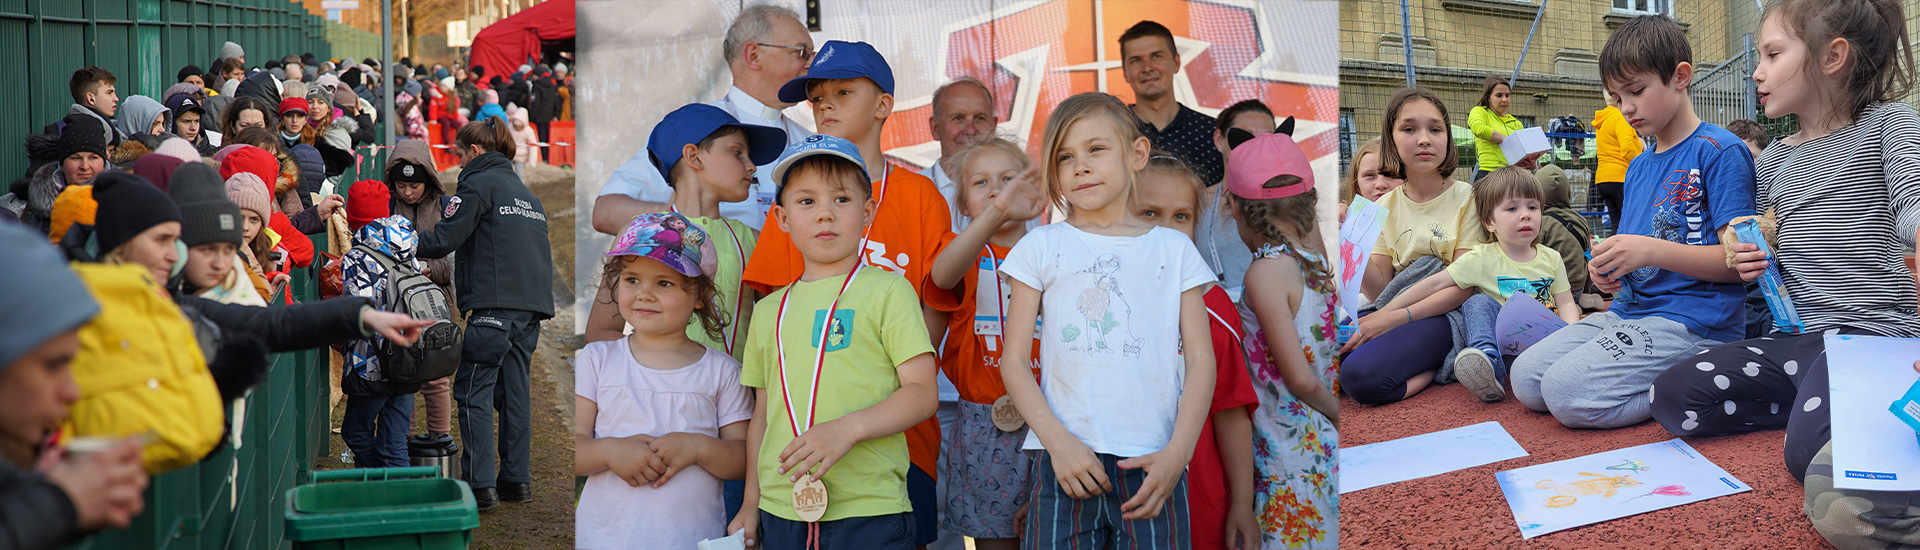 Ucrania: seis meses de guerra centrados en los menores y personas refugiadas